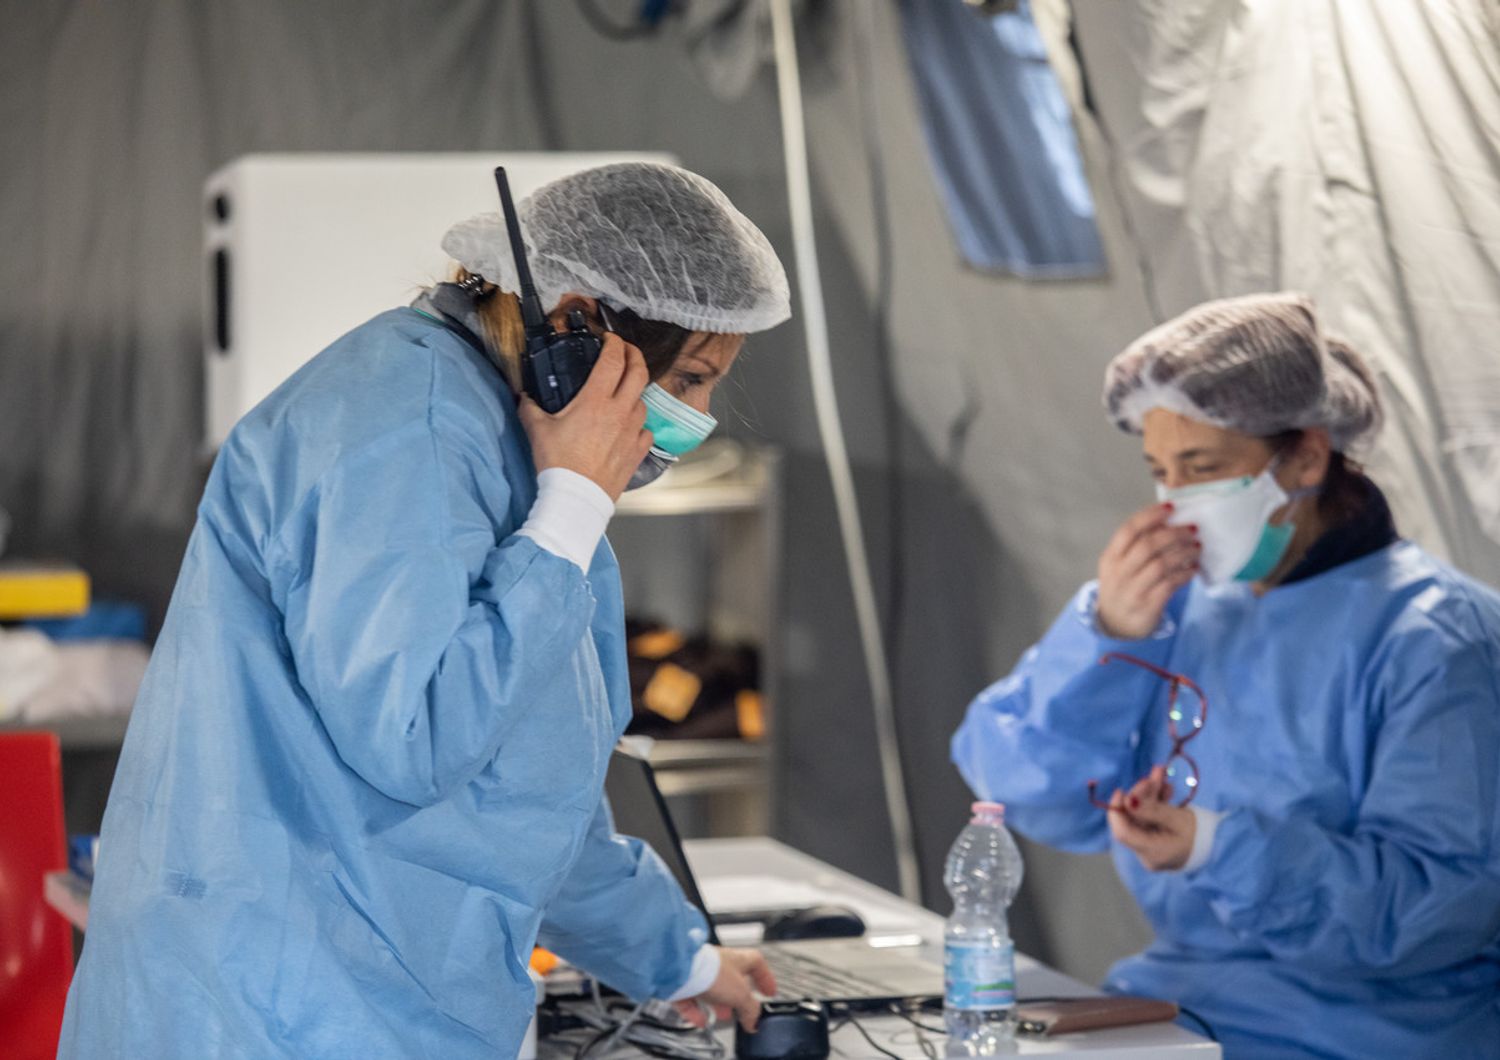 Coronavirus: la tenda pre triage allestita fuori dall'ospedale di Cremona